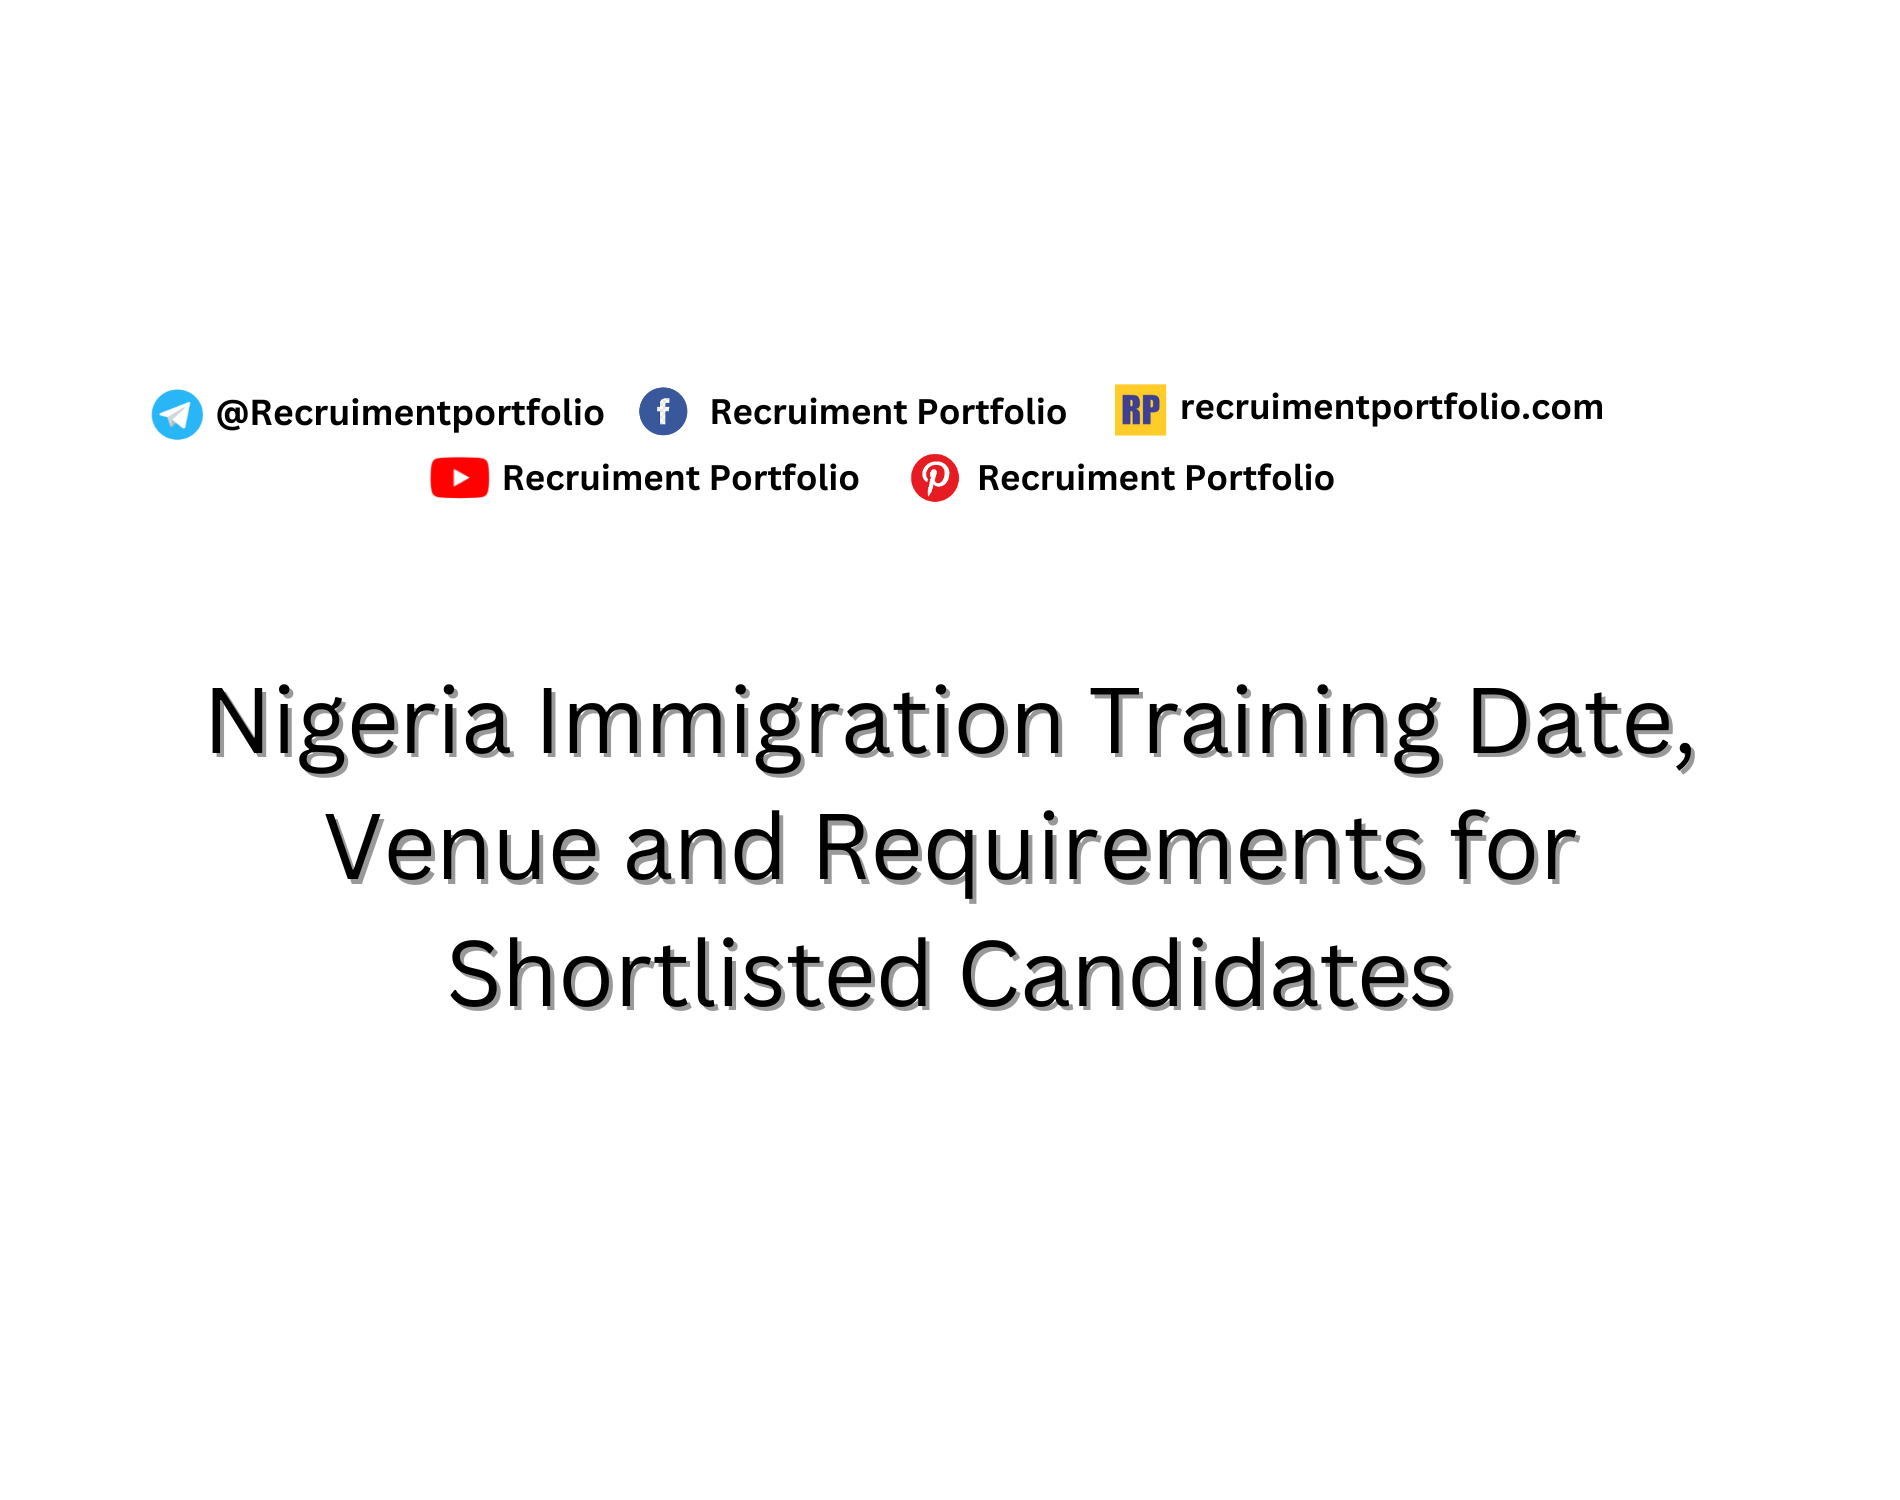 Nigeria Immigration Training Date